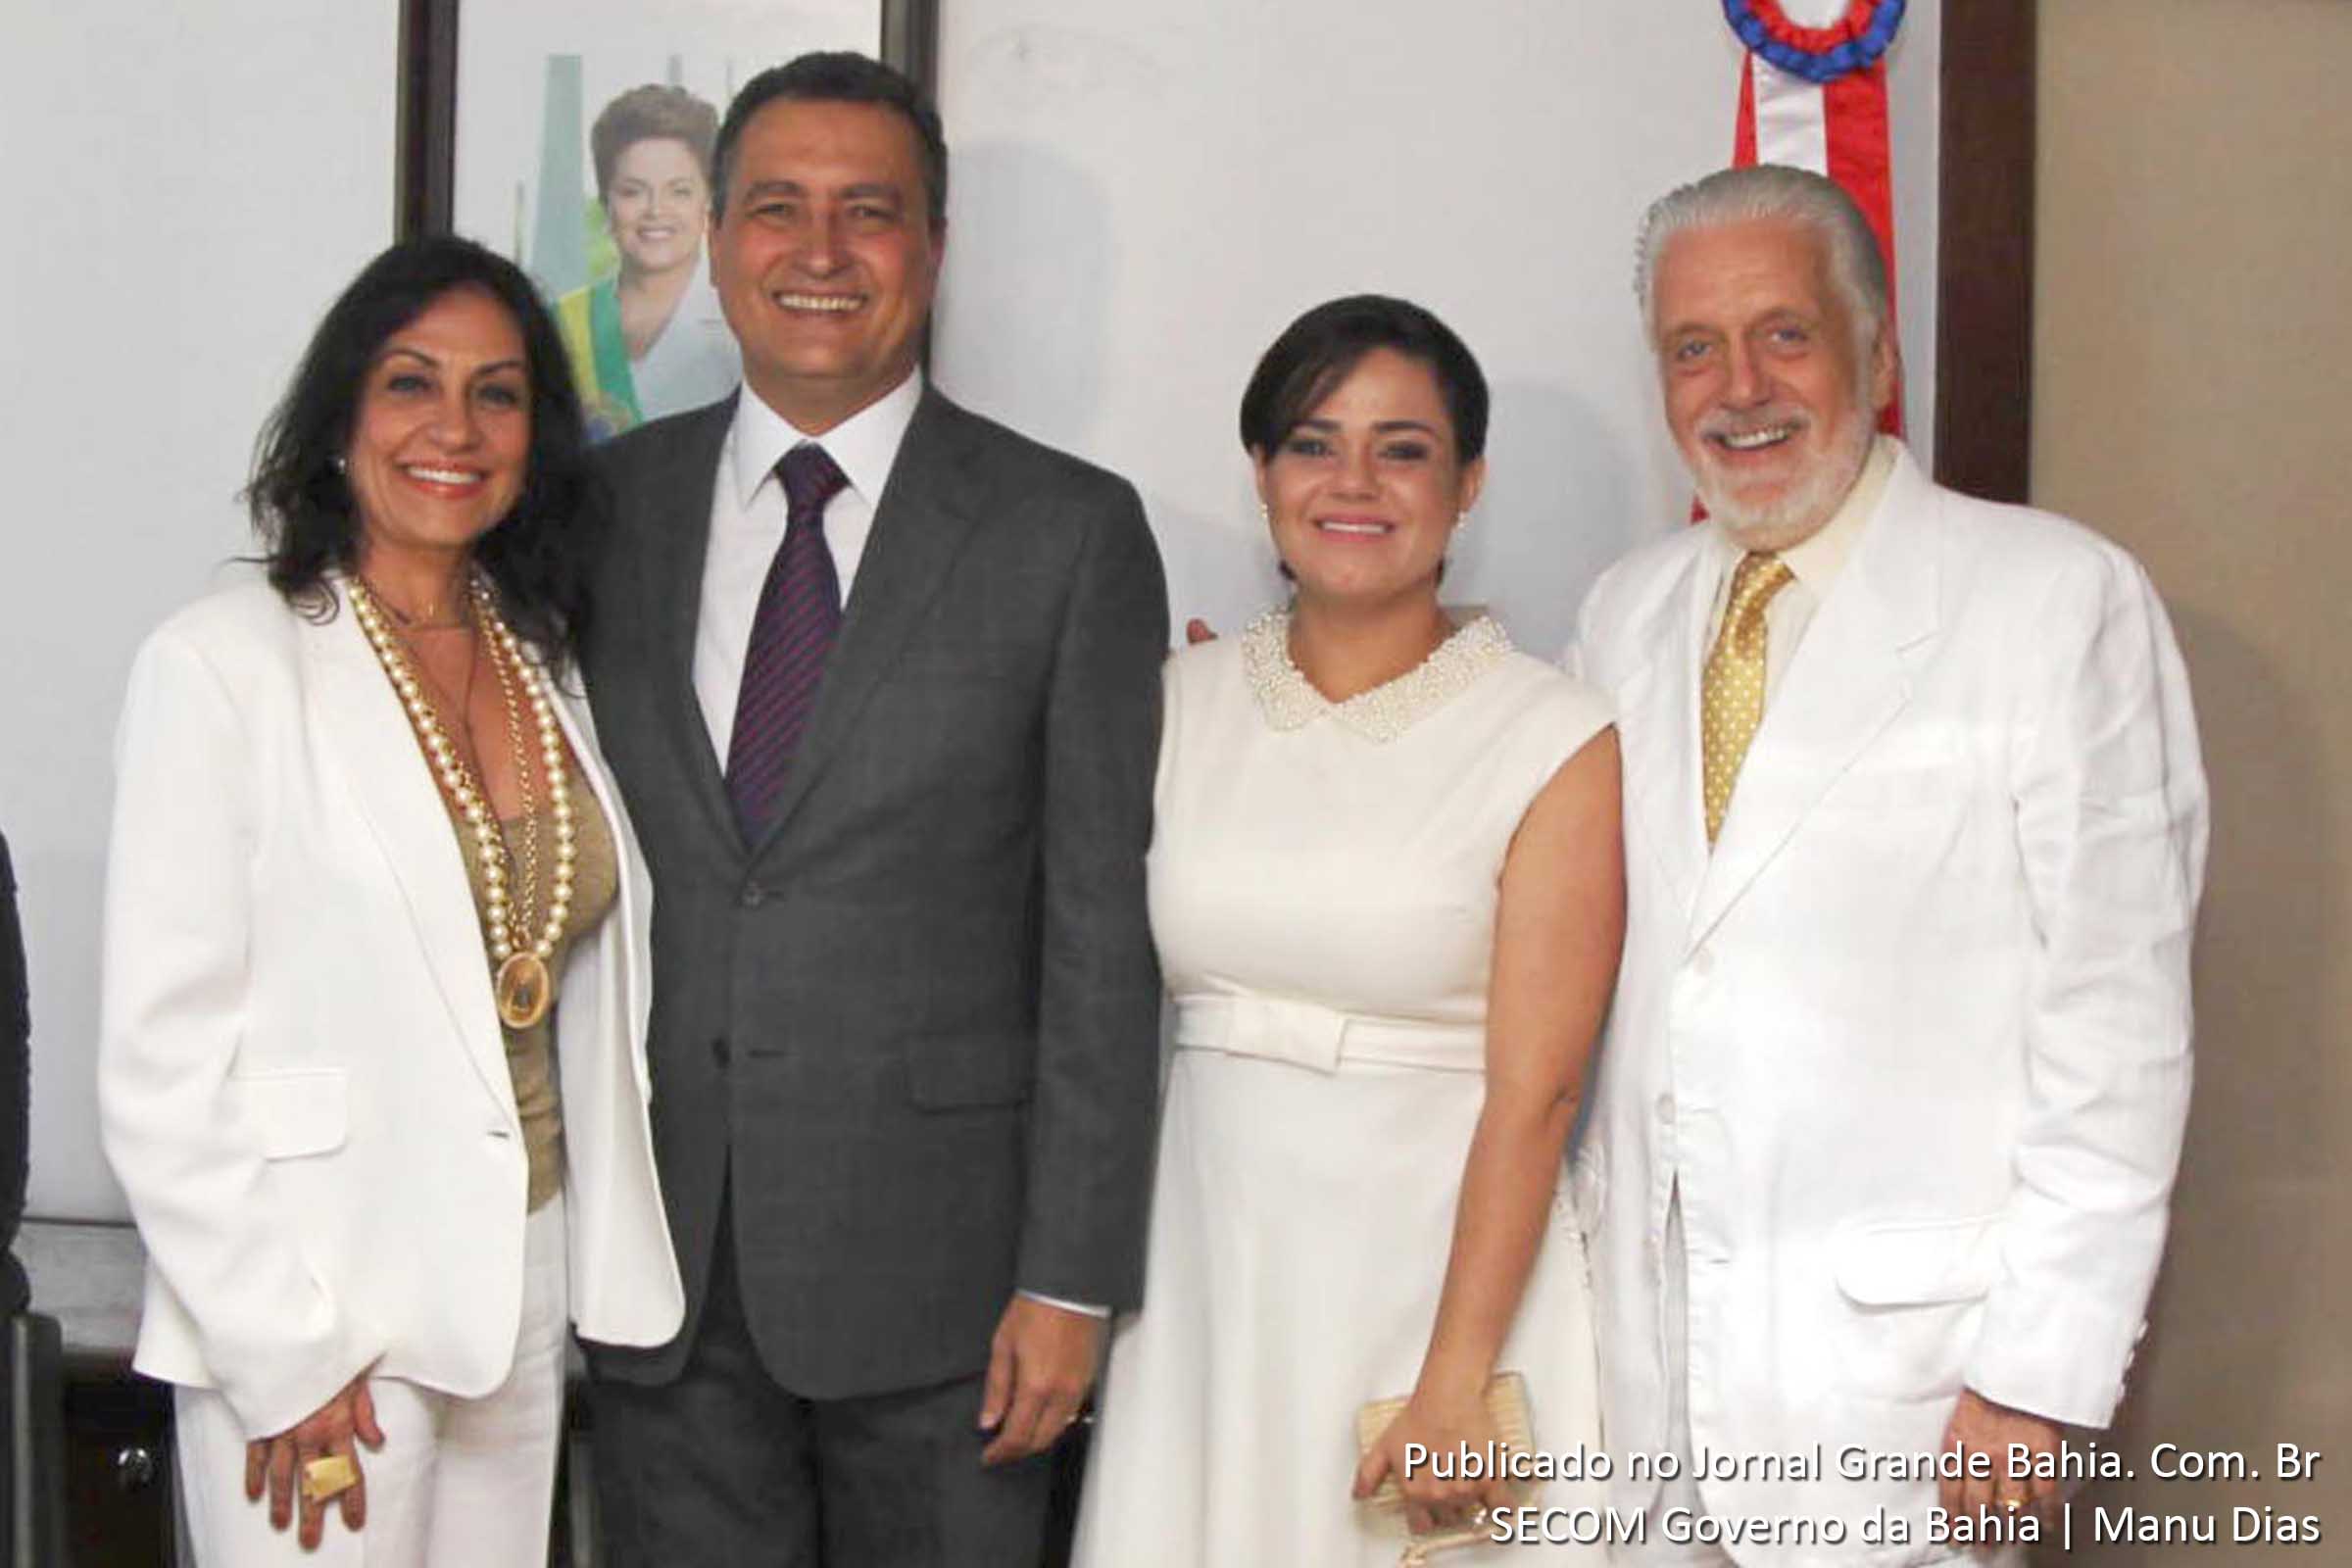 Rui Costa, acompanhado da primeira dama Aline Peixoto, e o ex-governador Jaques Wagner, ao lado da esposa, Fátima Mendonça.